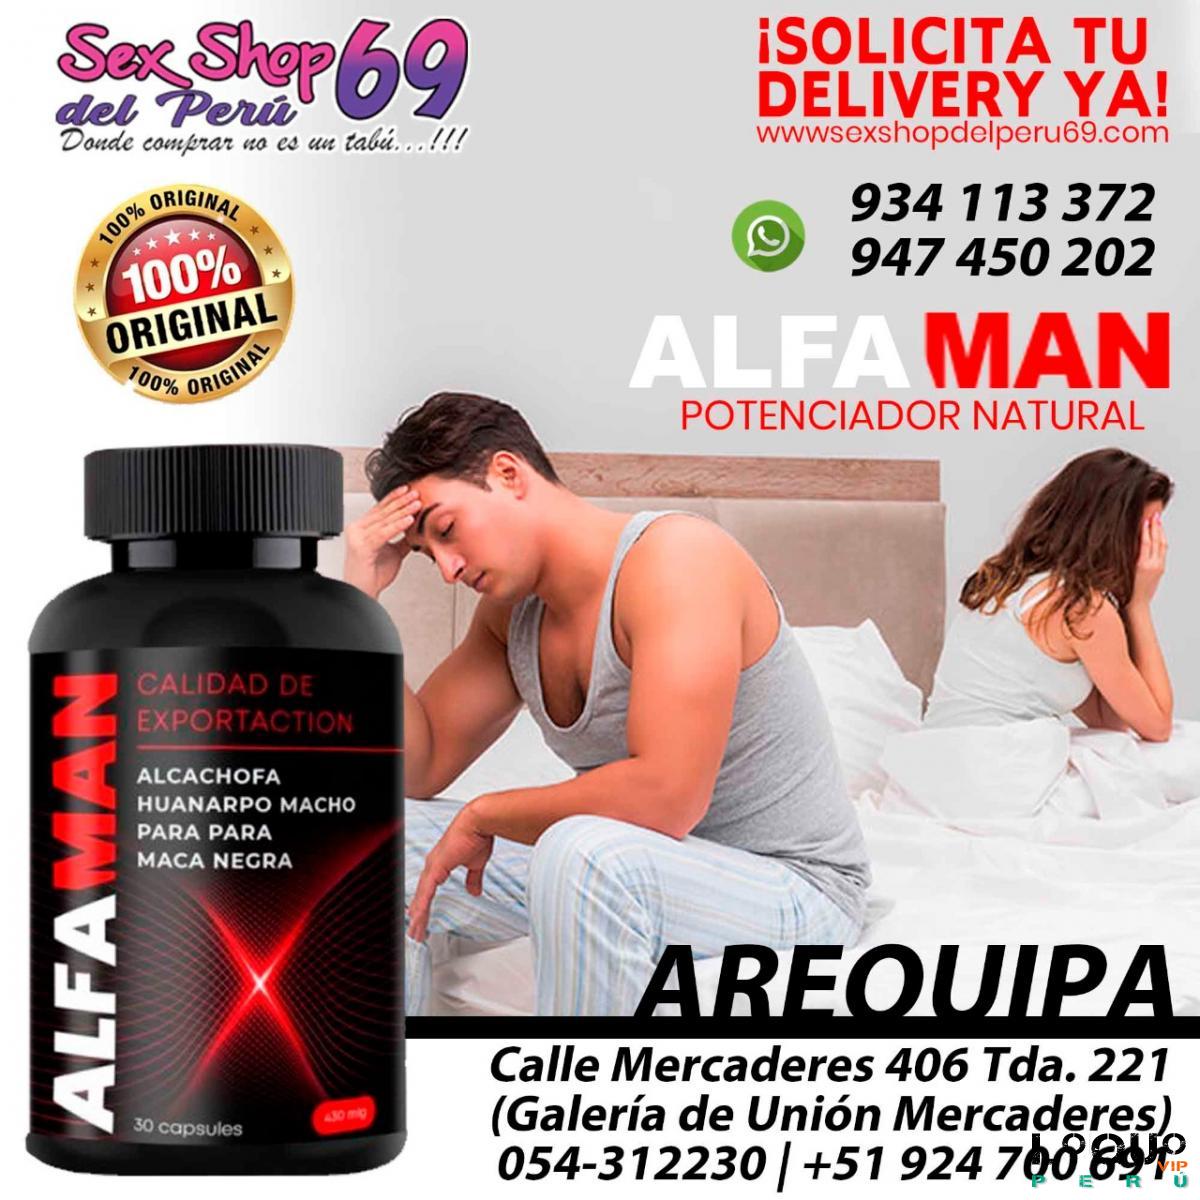 Sex Shop Arequipa: alfaman_producto natural_desarrollo _potencia_mejores erecciones